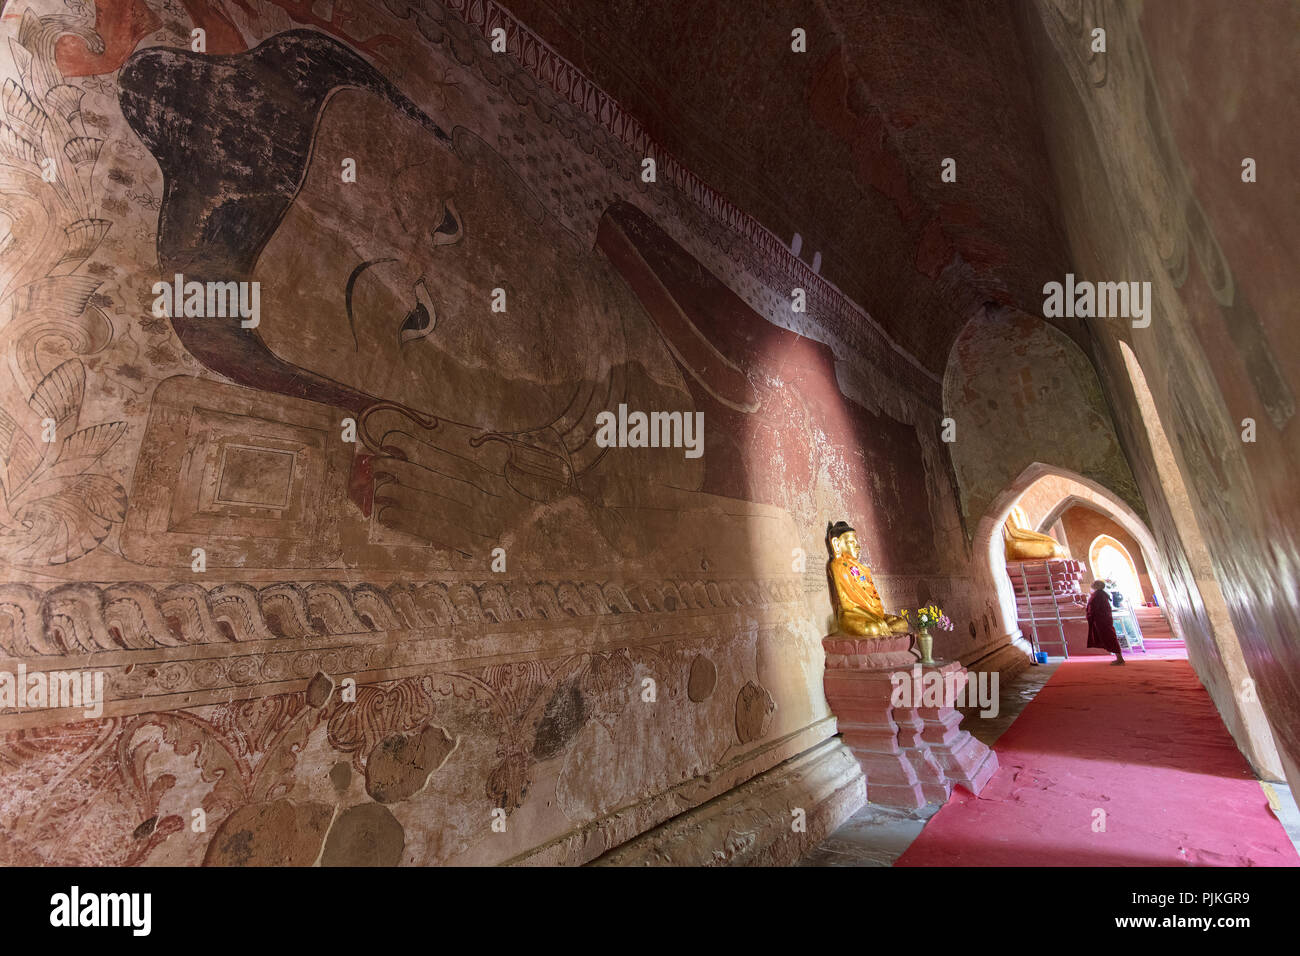 Detalle de los frescos y un Buda reclinado en el interior del "Templo ulamani'. Minnanthu village, al suroeste de Bagan, Myanmar (Birmania). Foto de stock